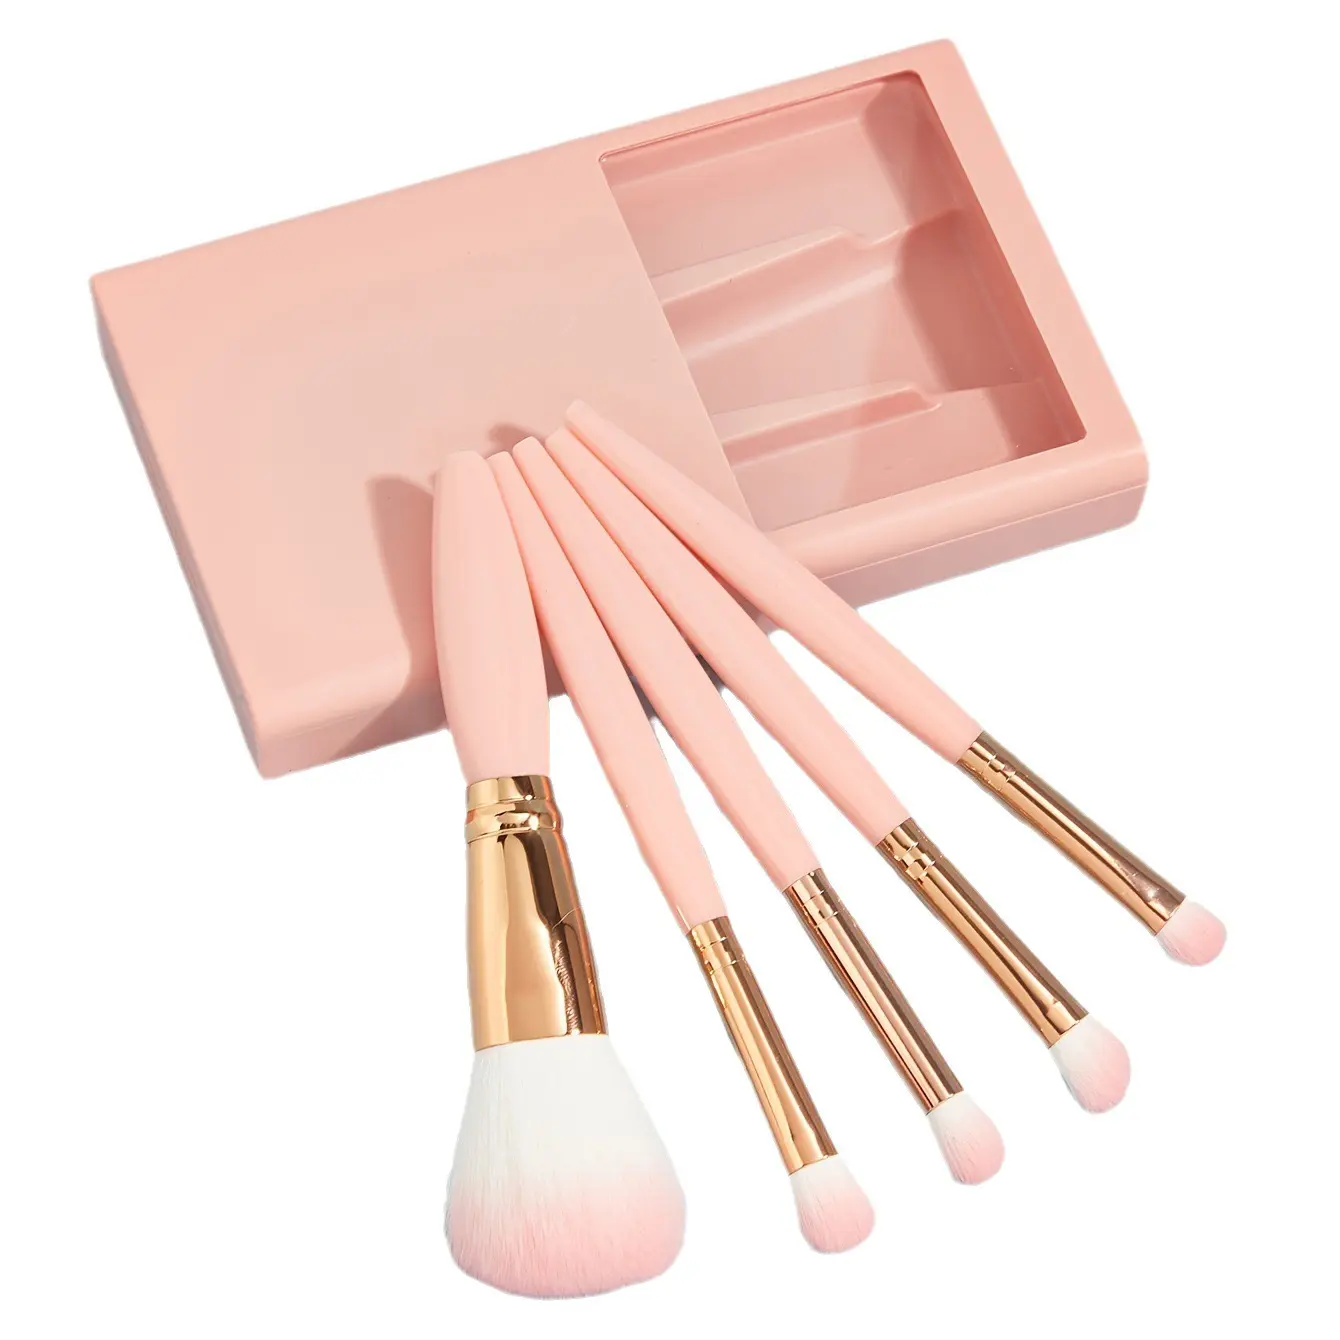 5 adet seyahat Mini kozmetik makyaj fırçalar taşınabilir makyaj fırça seti küçük kılıf ve ayna ile komple kozmetik fırçalar Set